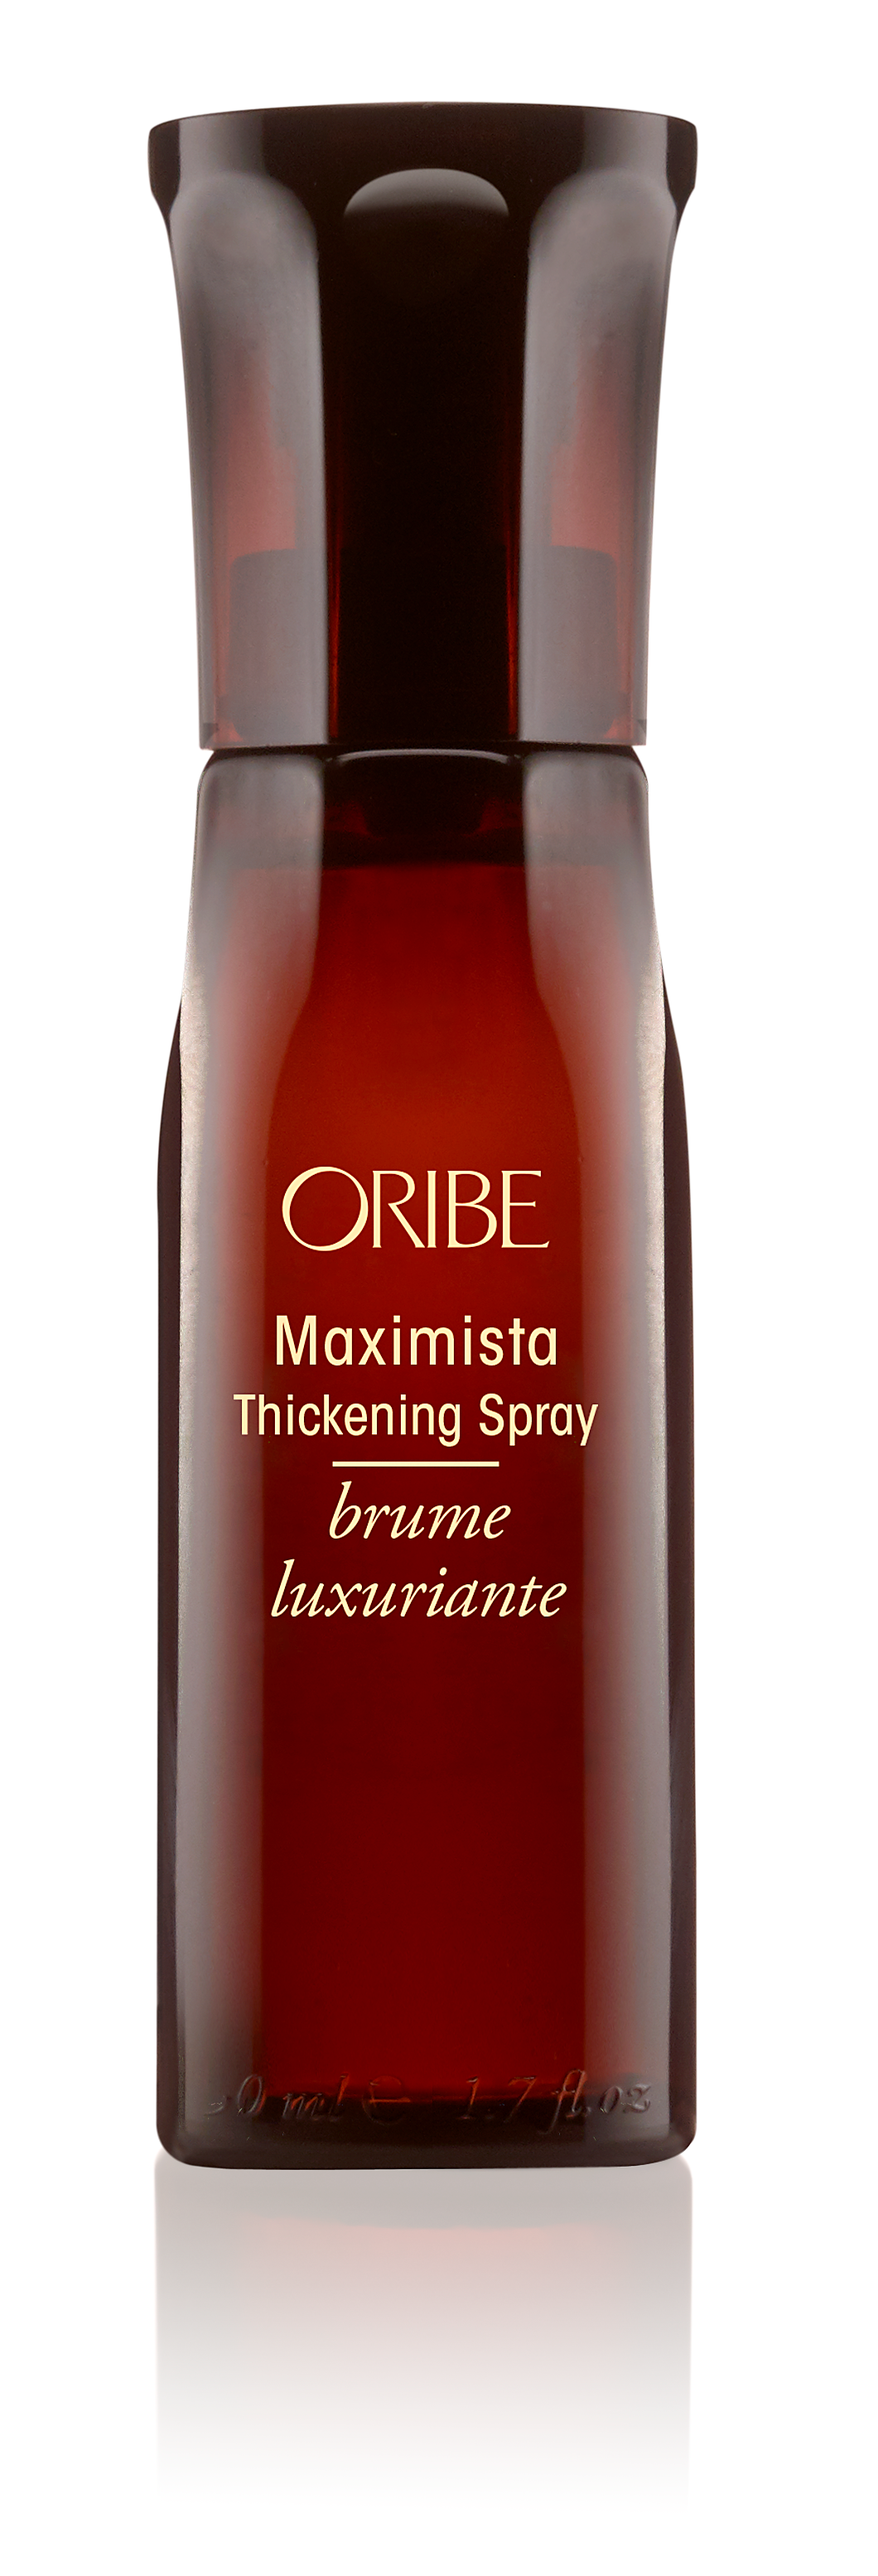 Oribe Maximista Thickening Spray